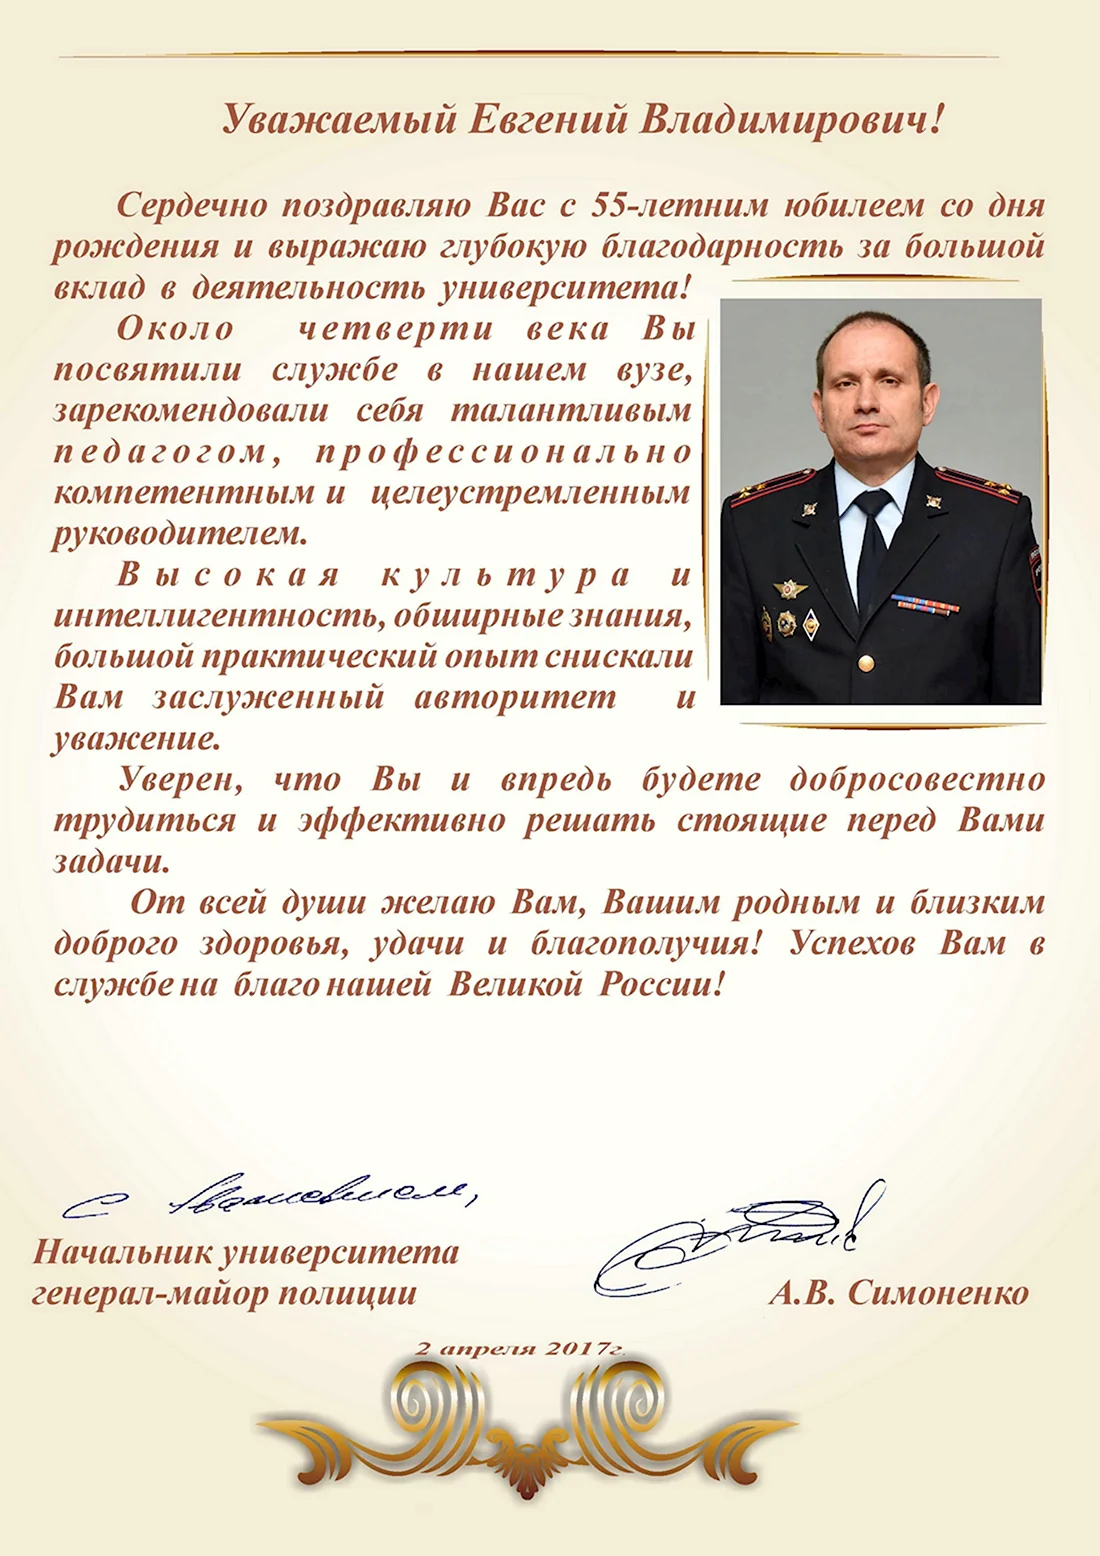 Поздравления генералам МВД С днем рождения официальные. Открытка для мужчины